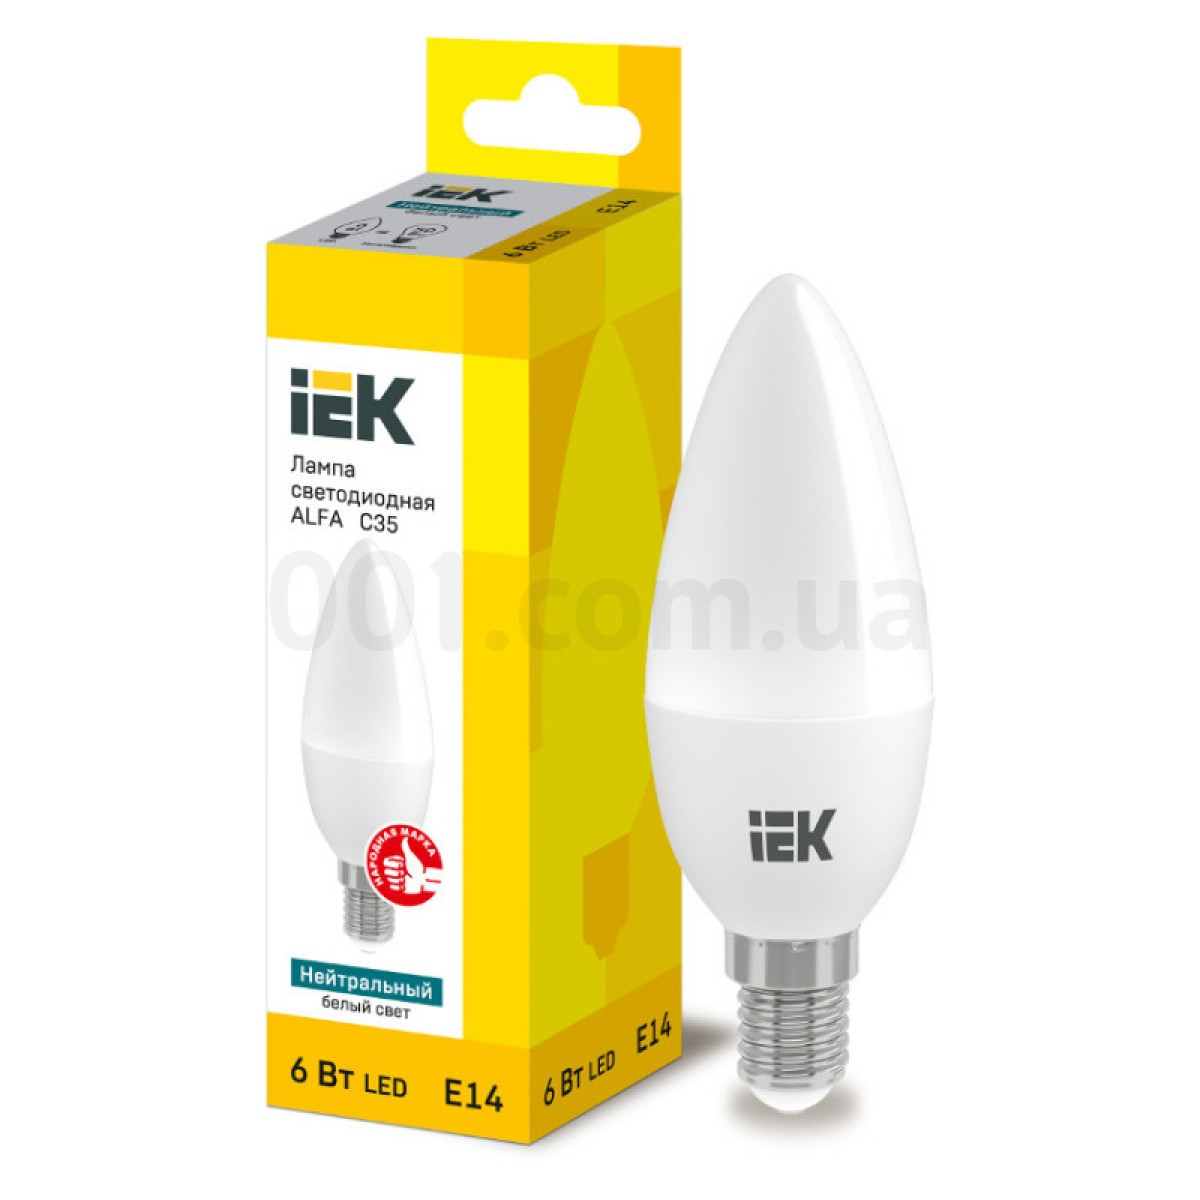 Світлодіодна лампа LED ALFA C35 (свічка) 6 Вт 230В 4000К E14, IEK 256_256.jpg